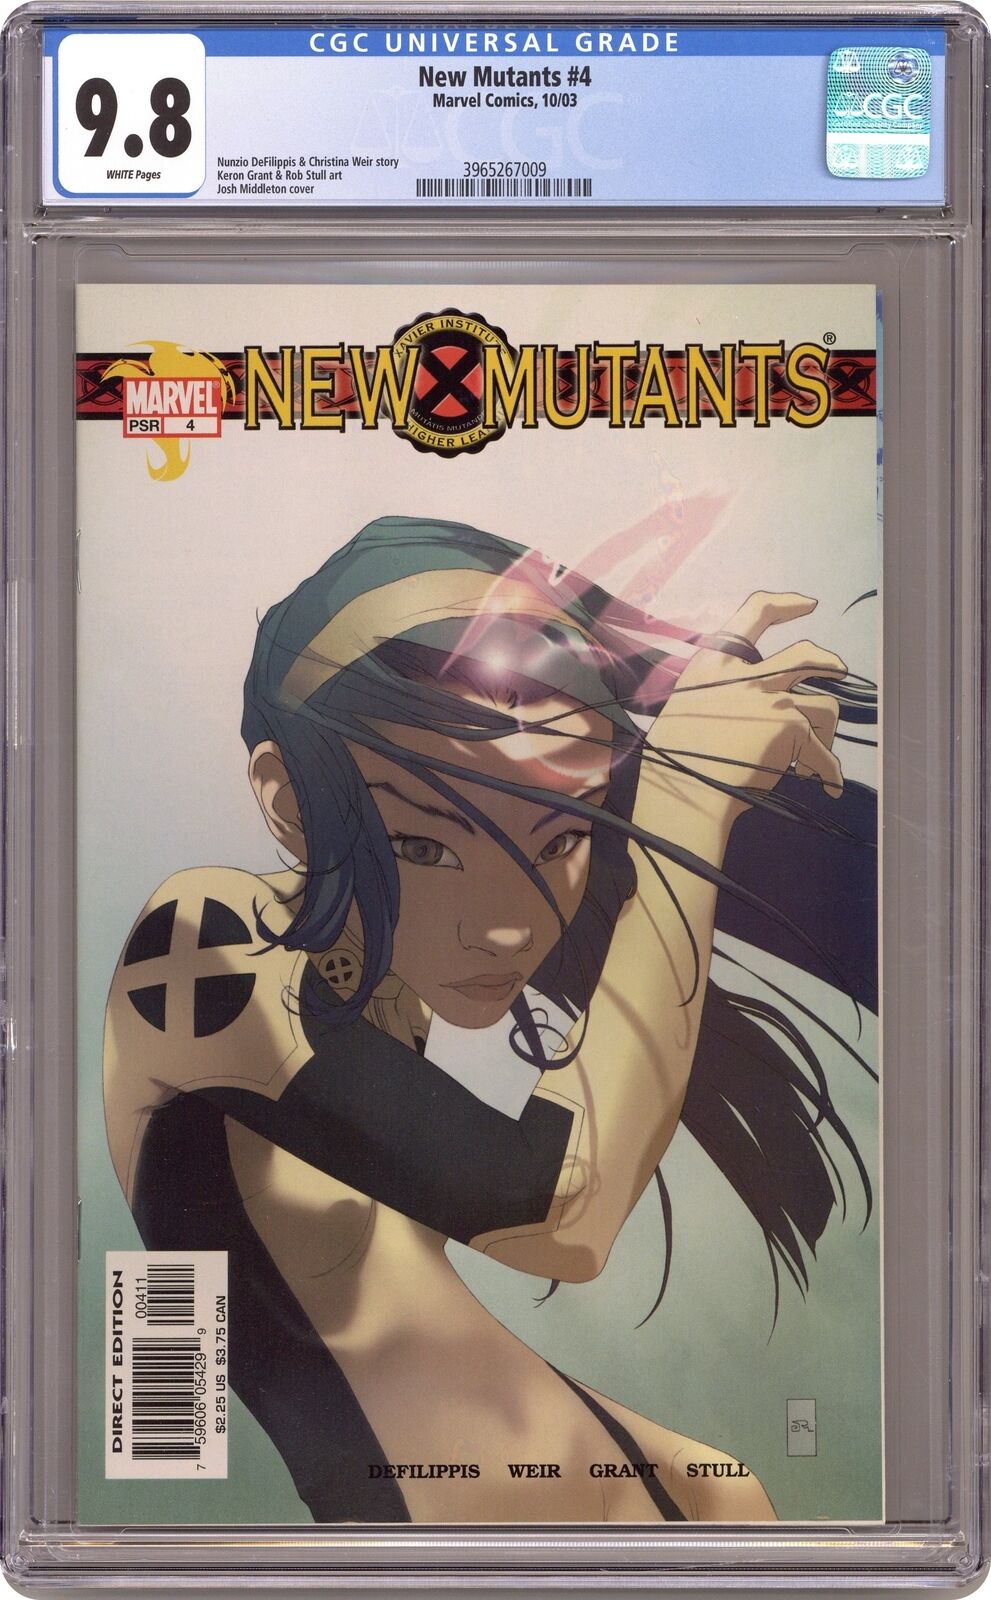 New Mutants #4 CGC 9.8 2003 3965267009